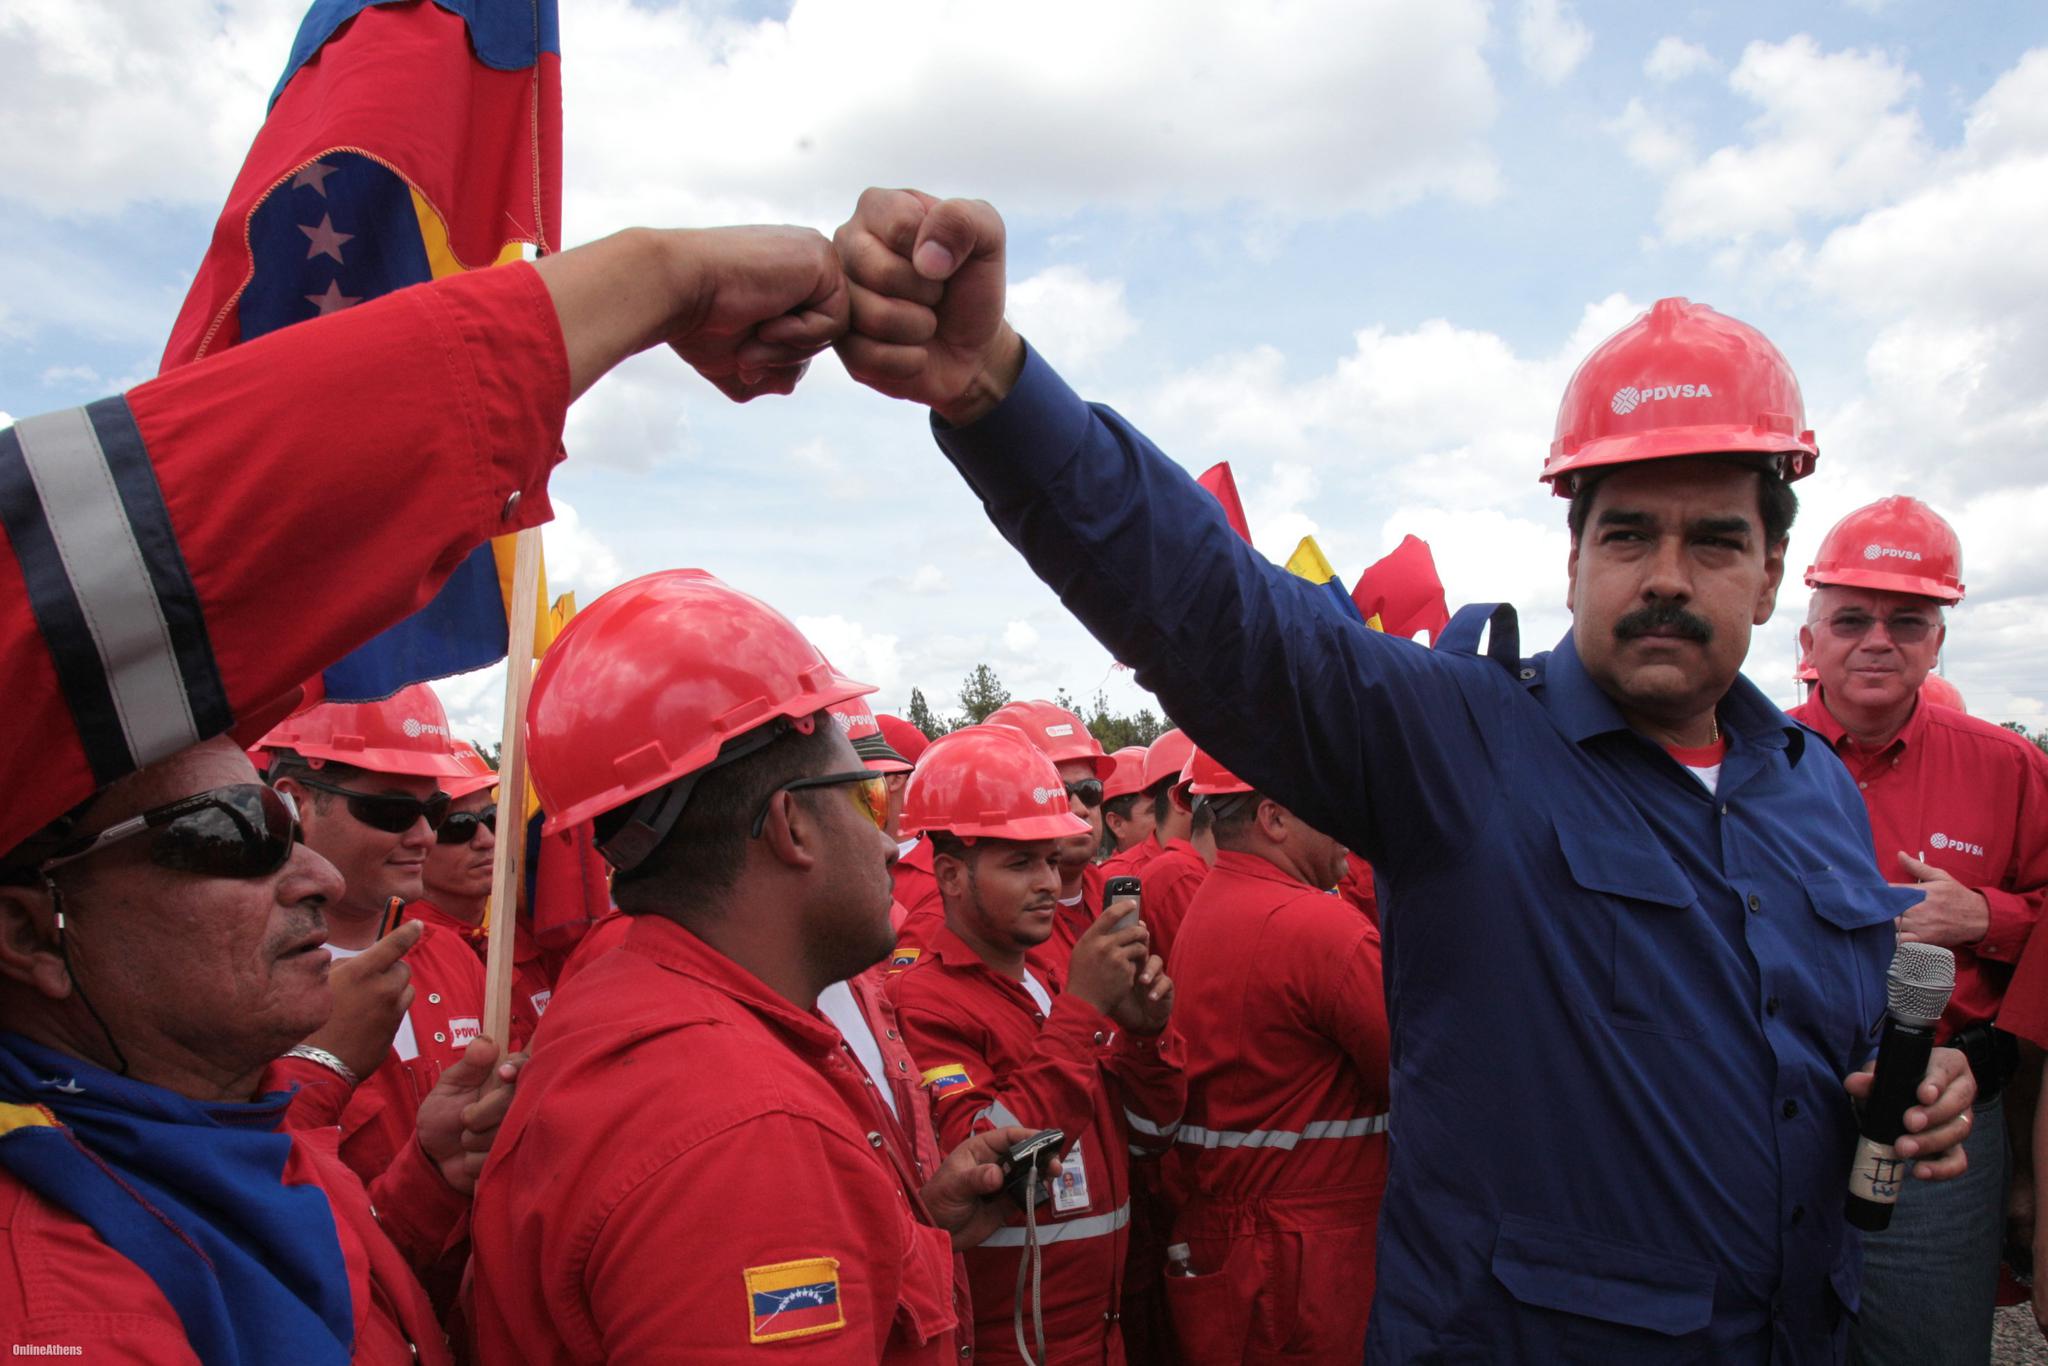 中国再伸援手!2.5亿美元助委内瑞拉增加原油产